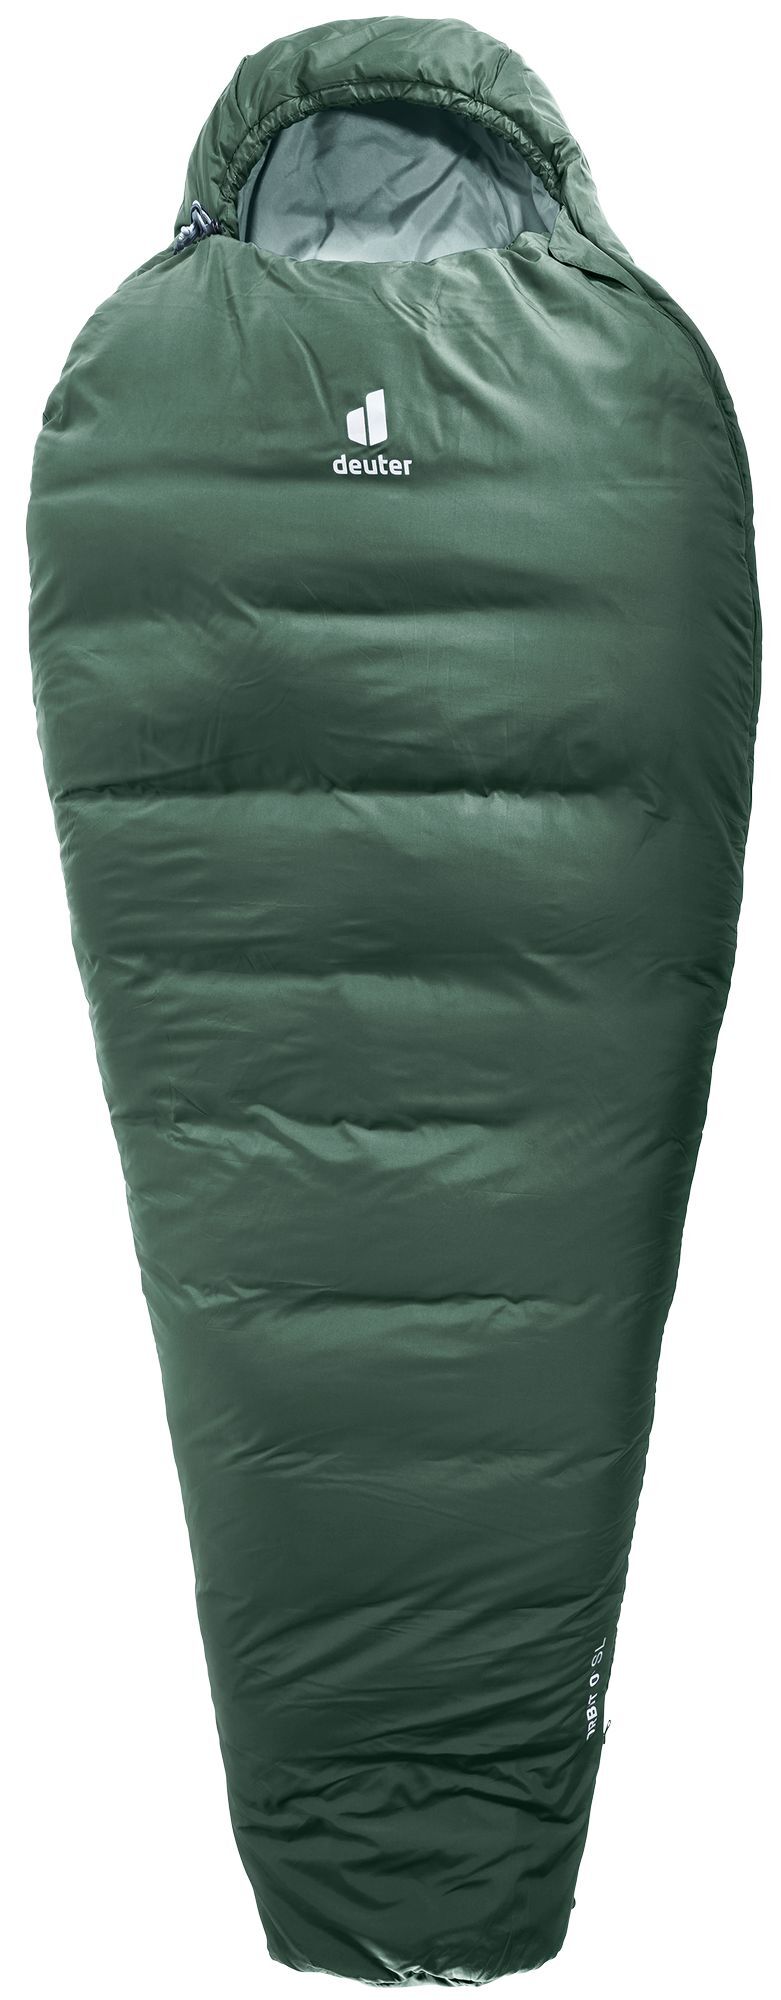 Deuter Orbit 0° SL - Sleeping bag - Women's